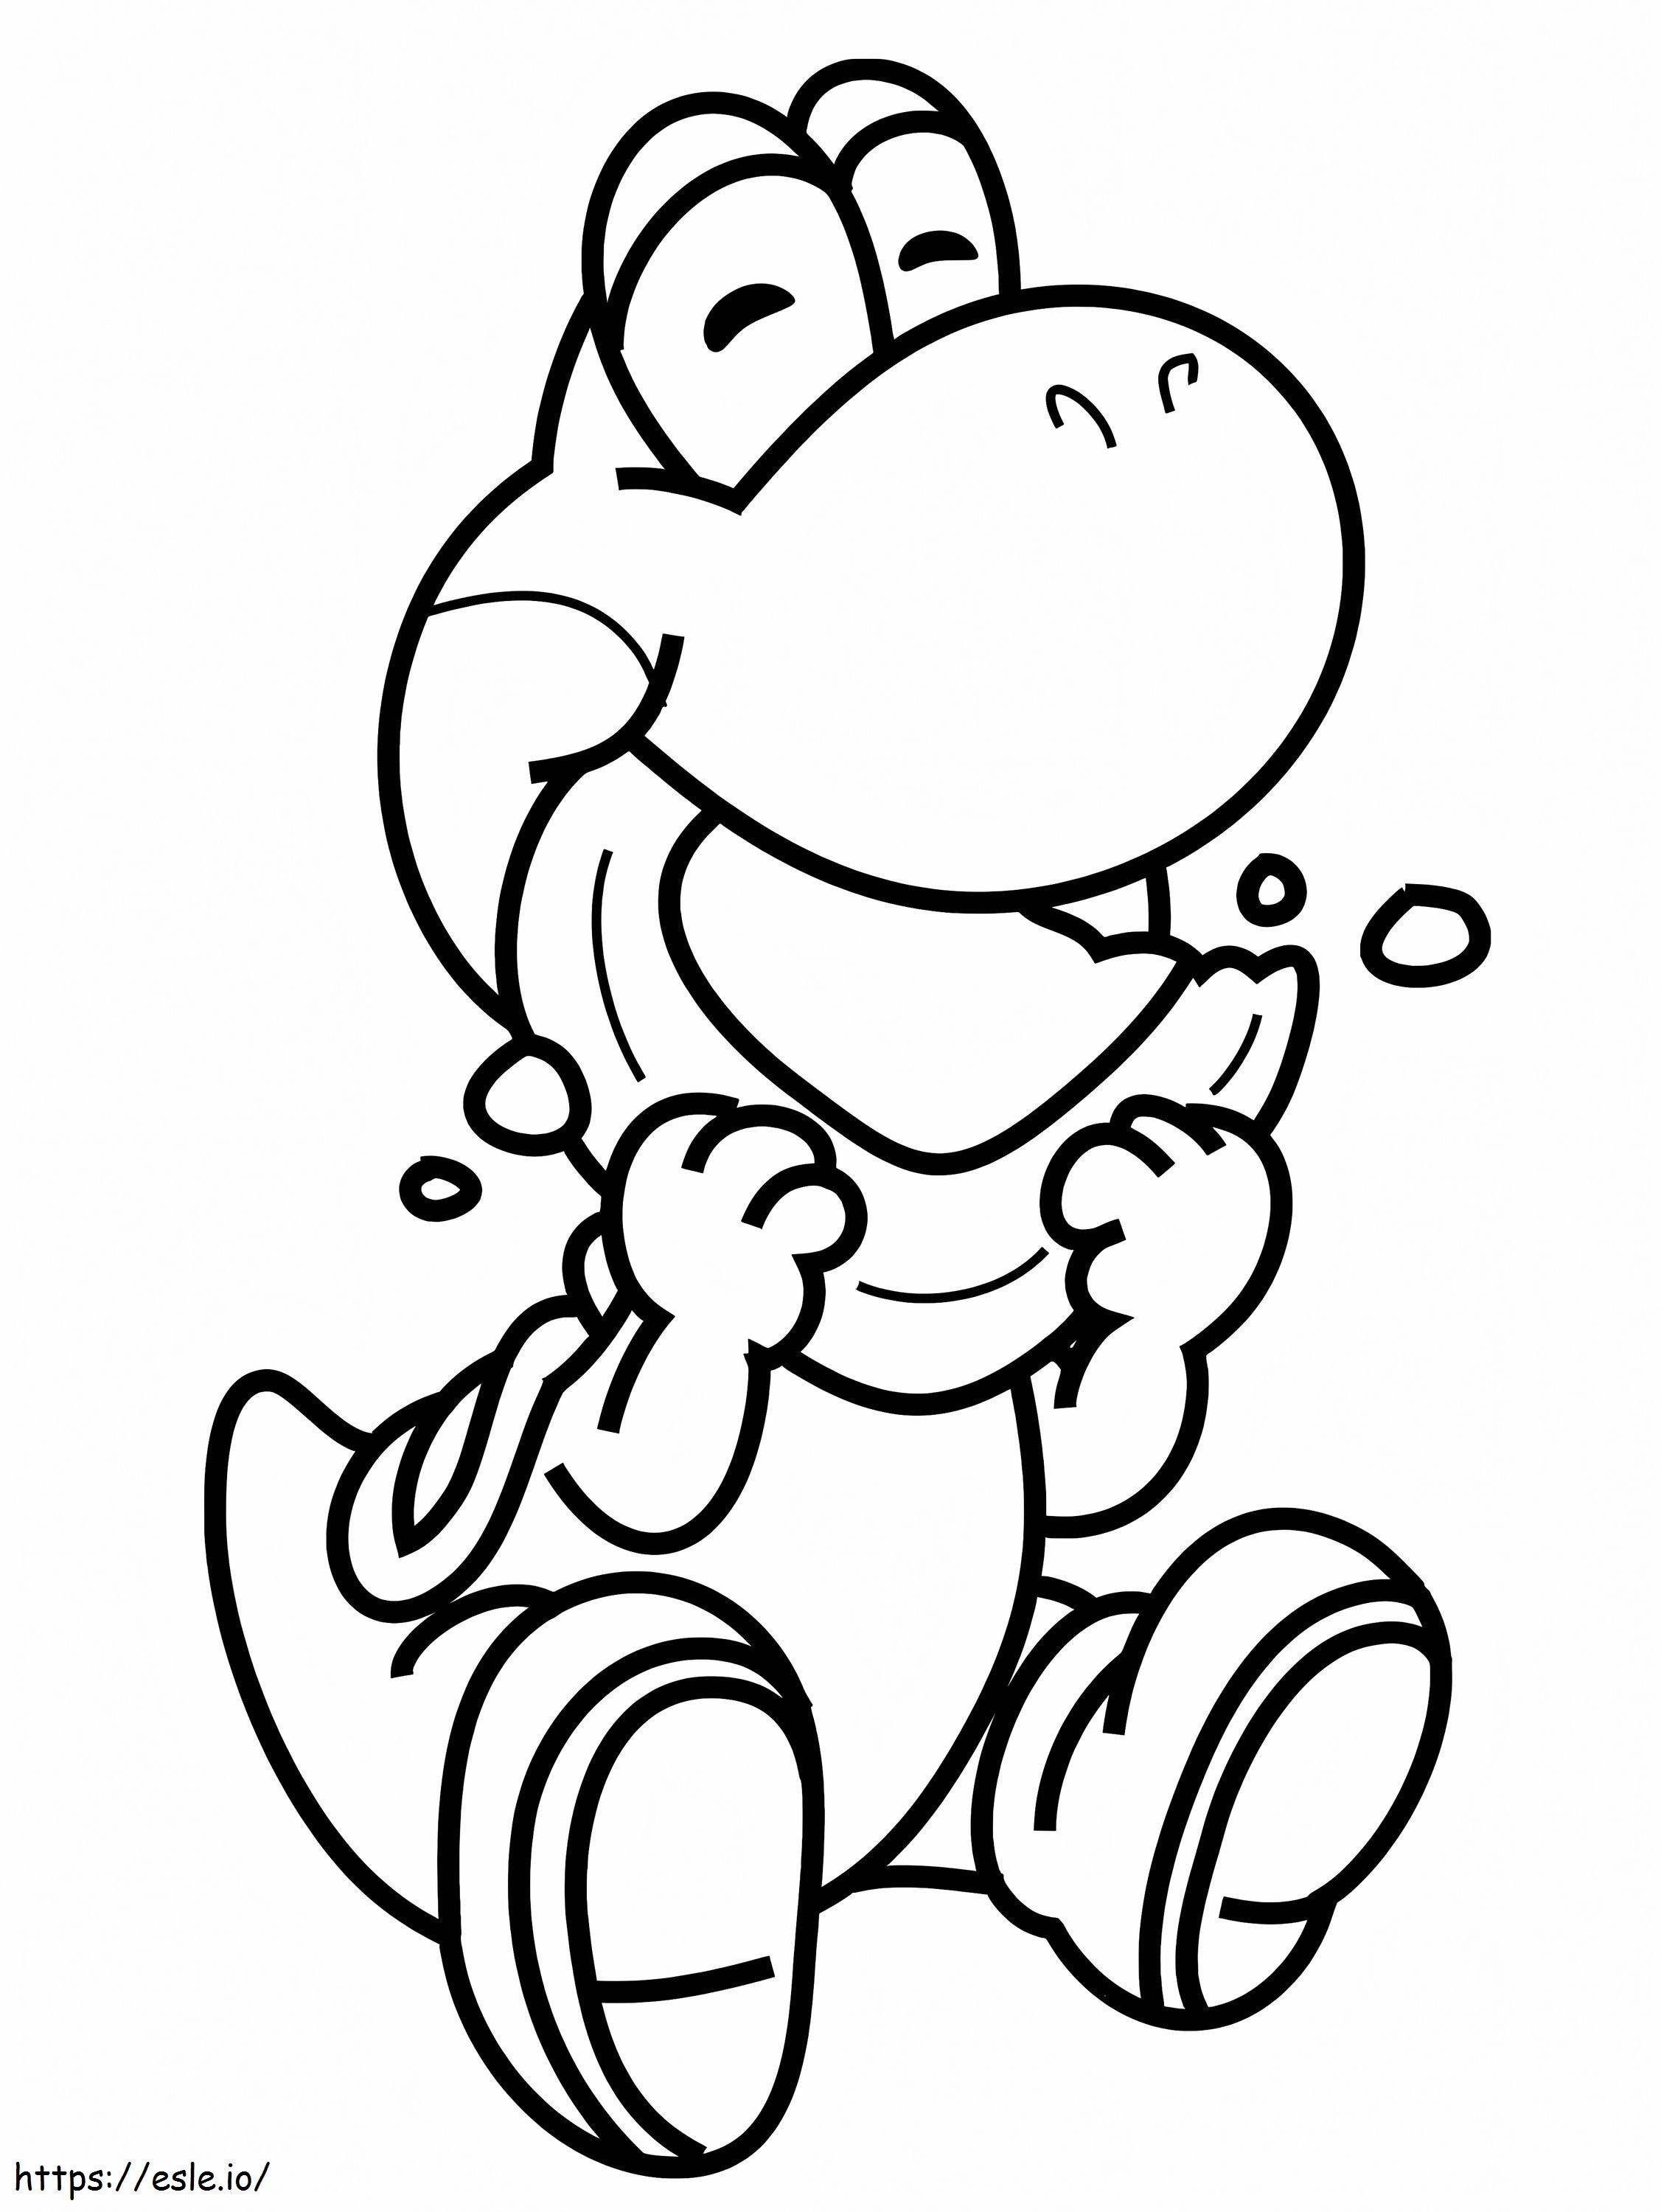 Yoshi De Super Mario coloring page